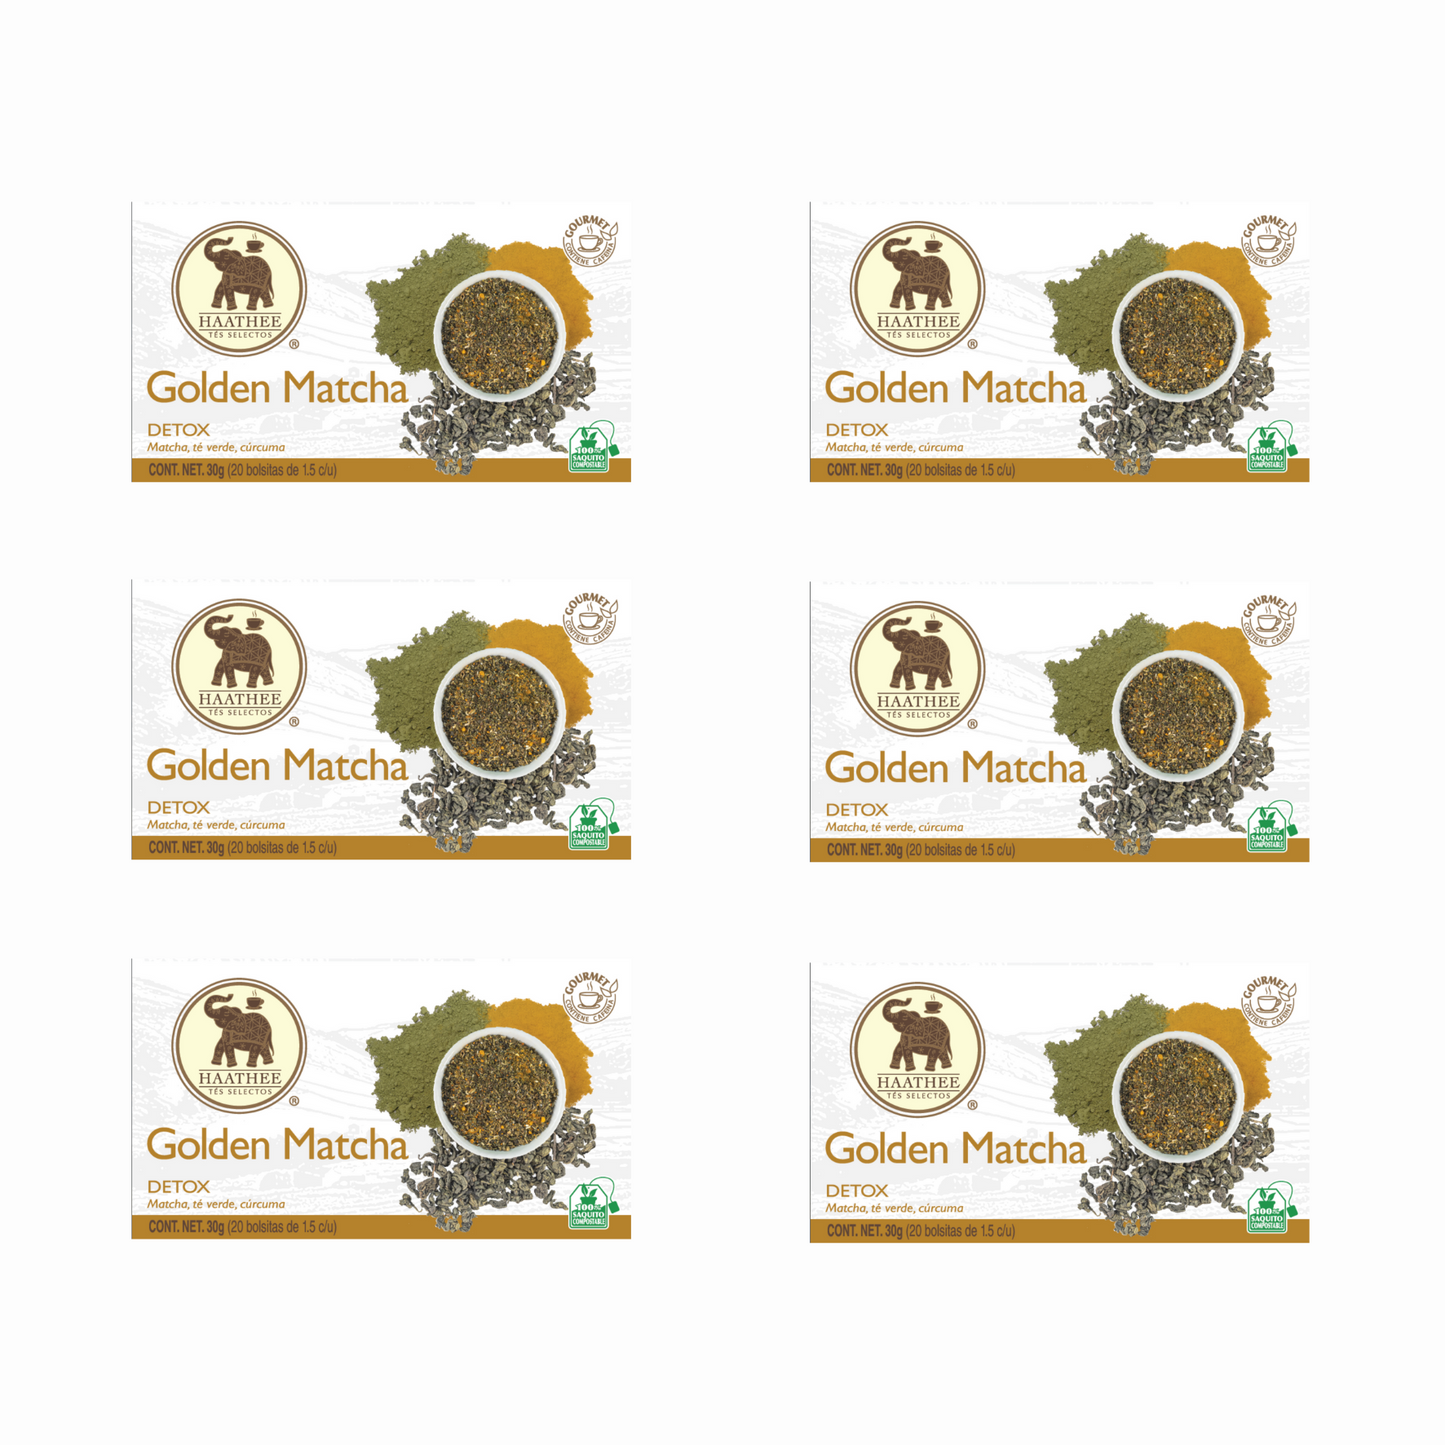 Haathee Línea Gourmet (Family Packs de 6 cajitas - Sabores variados)